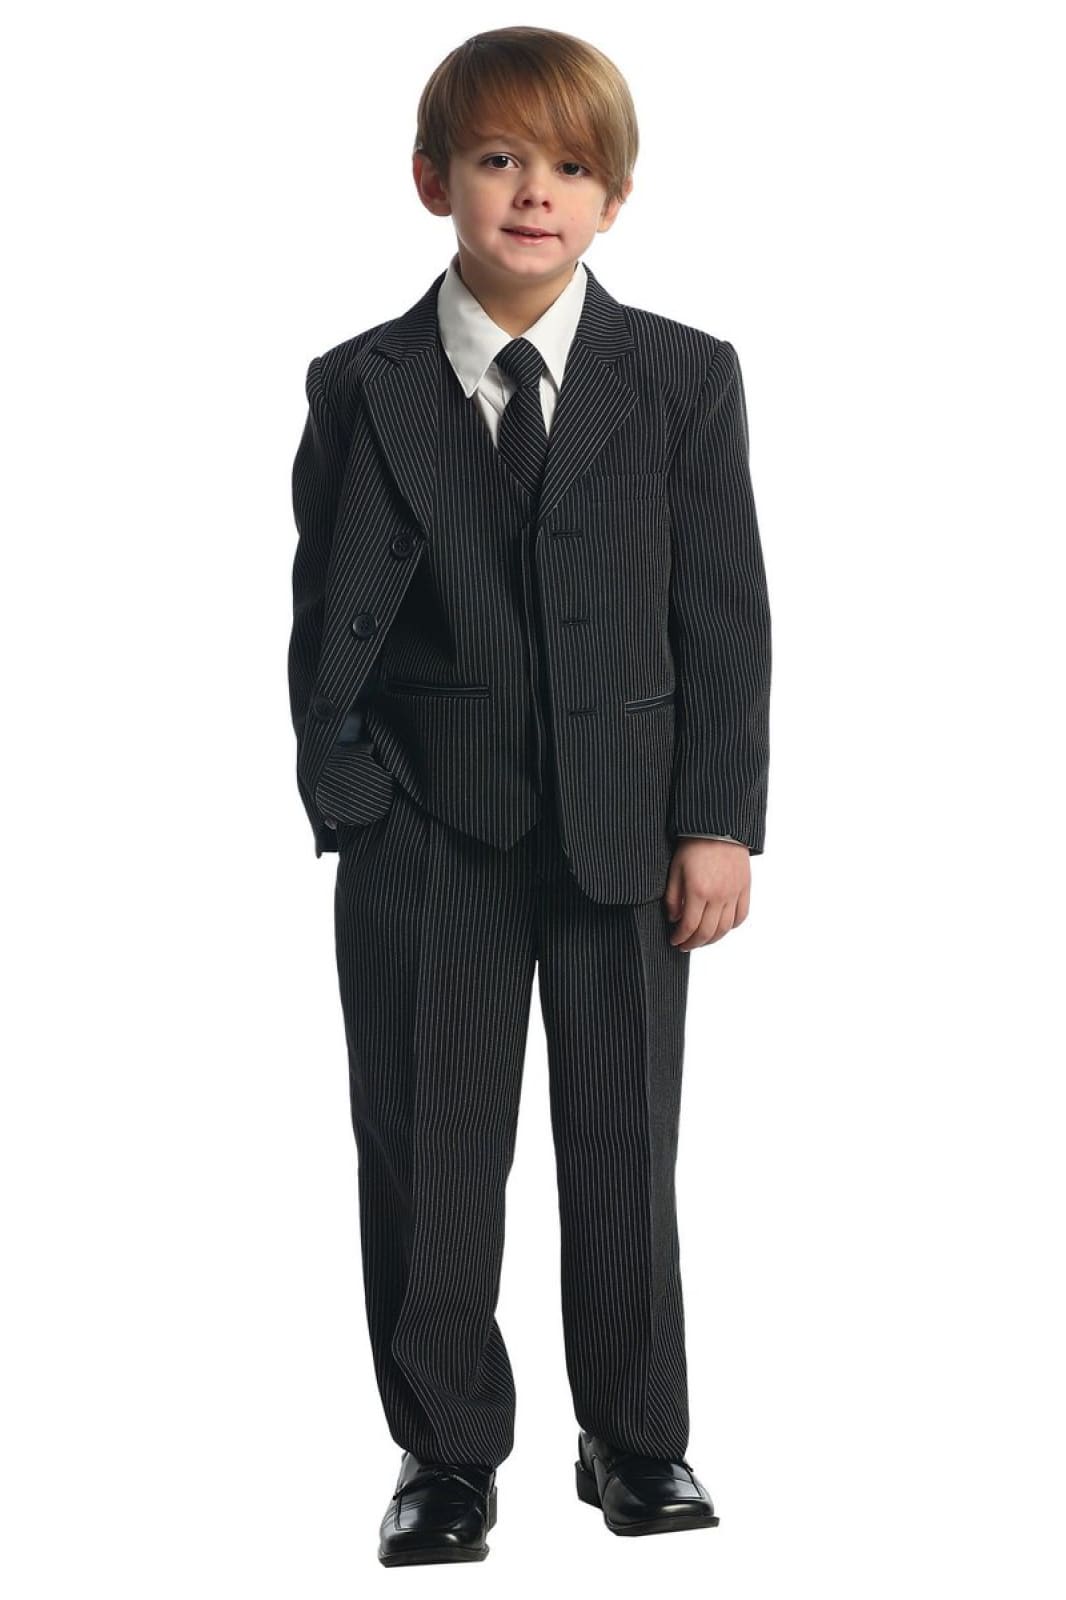 LA Merchandise LA8221 5 Piece Boy Striped Suit with Vest & Tie - Black Stripes - Boys suits LA Merchandise